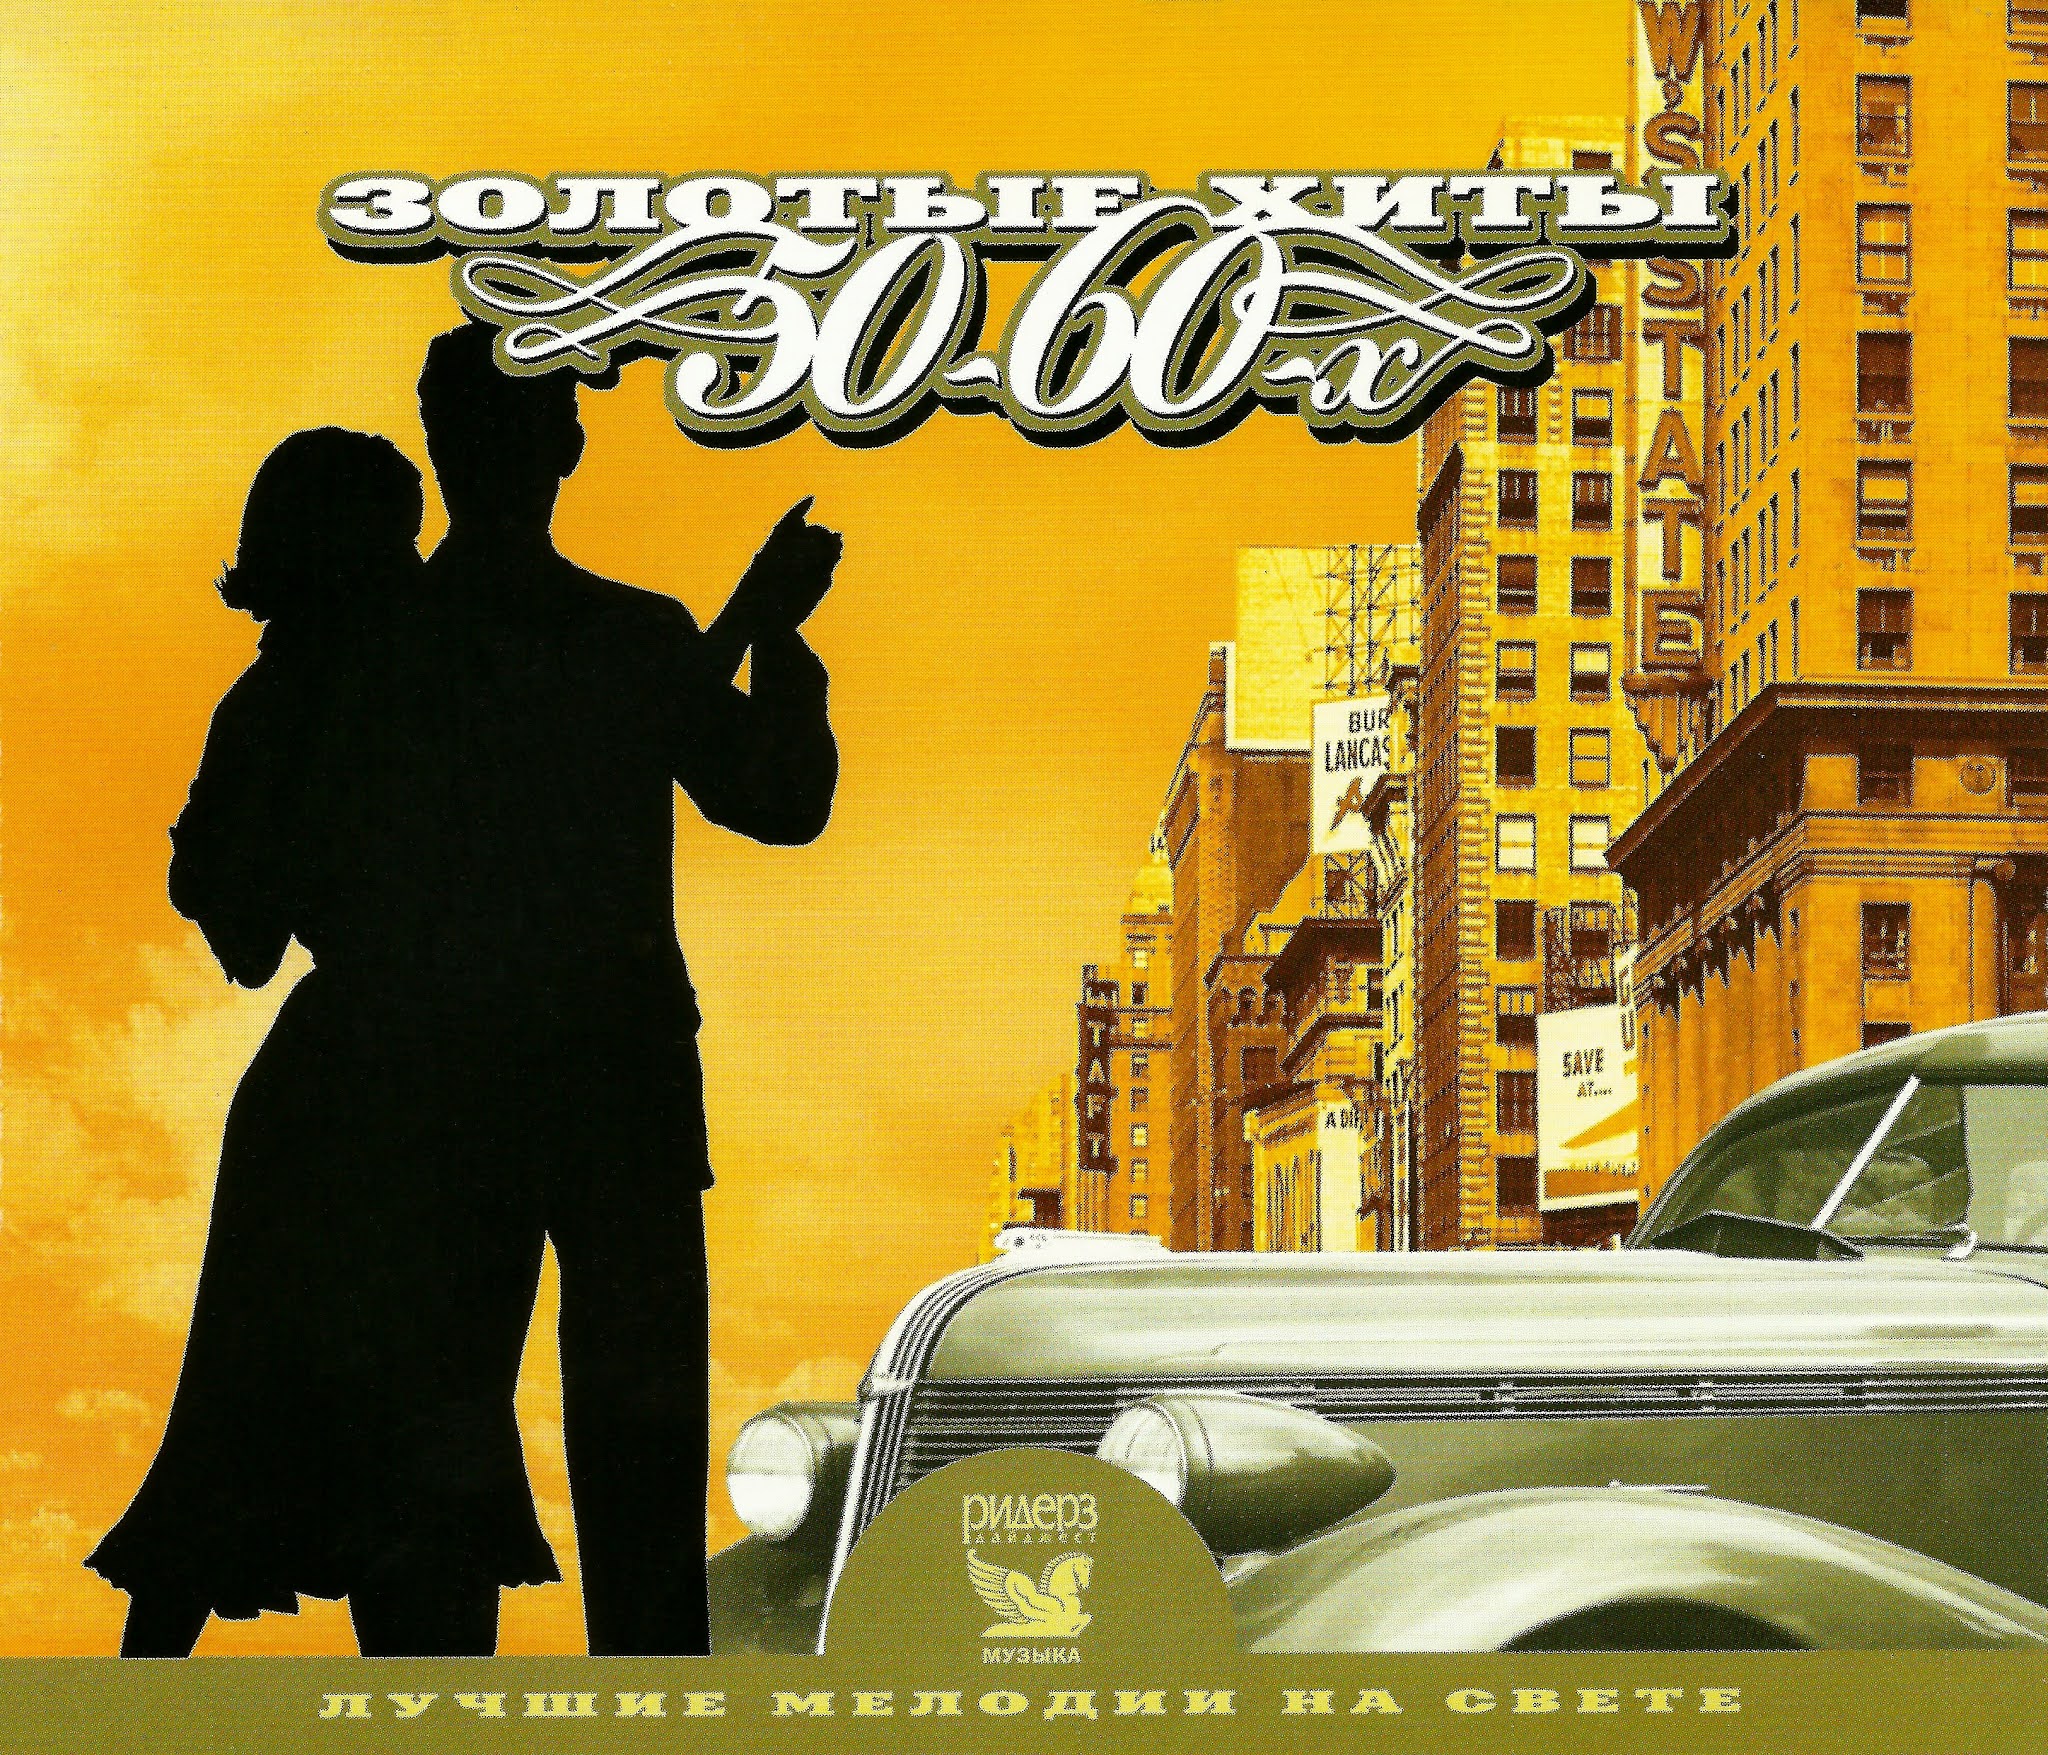 Веселые песни 50. Постер 999 "музыка" 40х28 см. CD золотые хиты 50-60-х. Обложки альбомов шестидесятых. Золотое ретро 50-60 годов cd2 (2005).